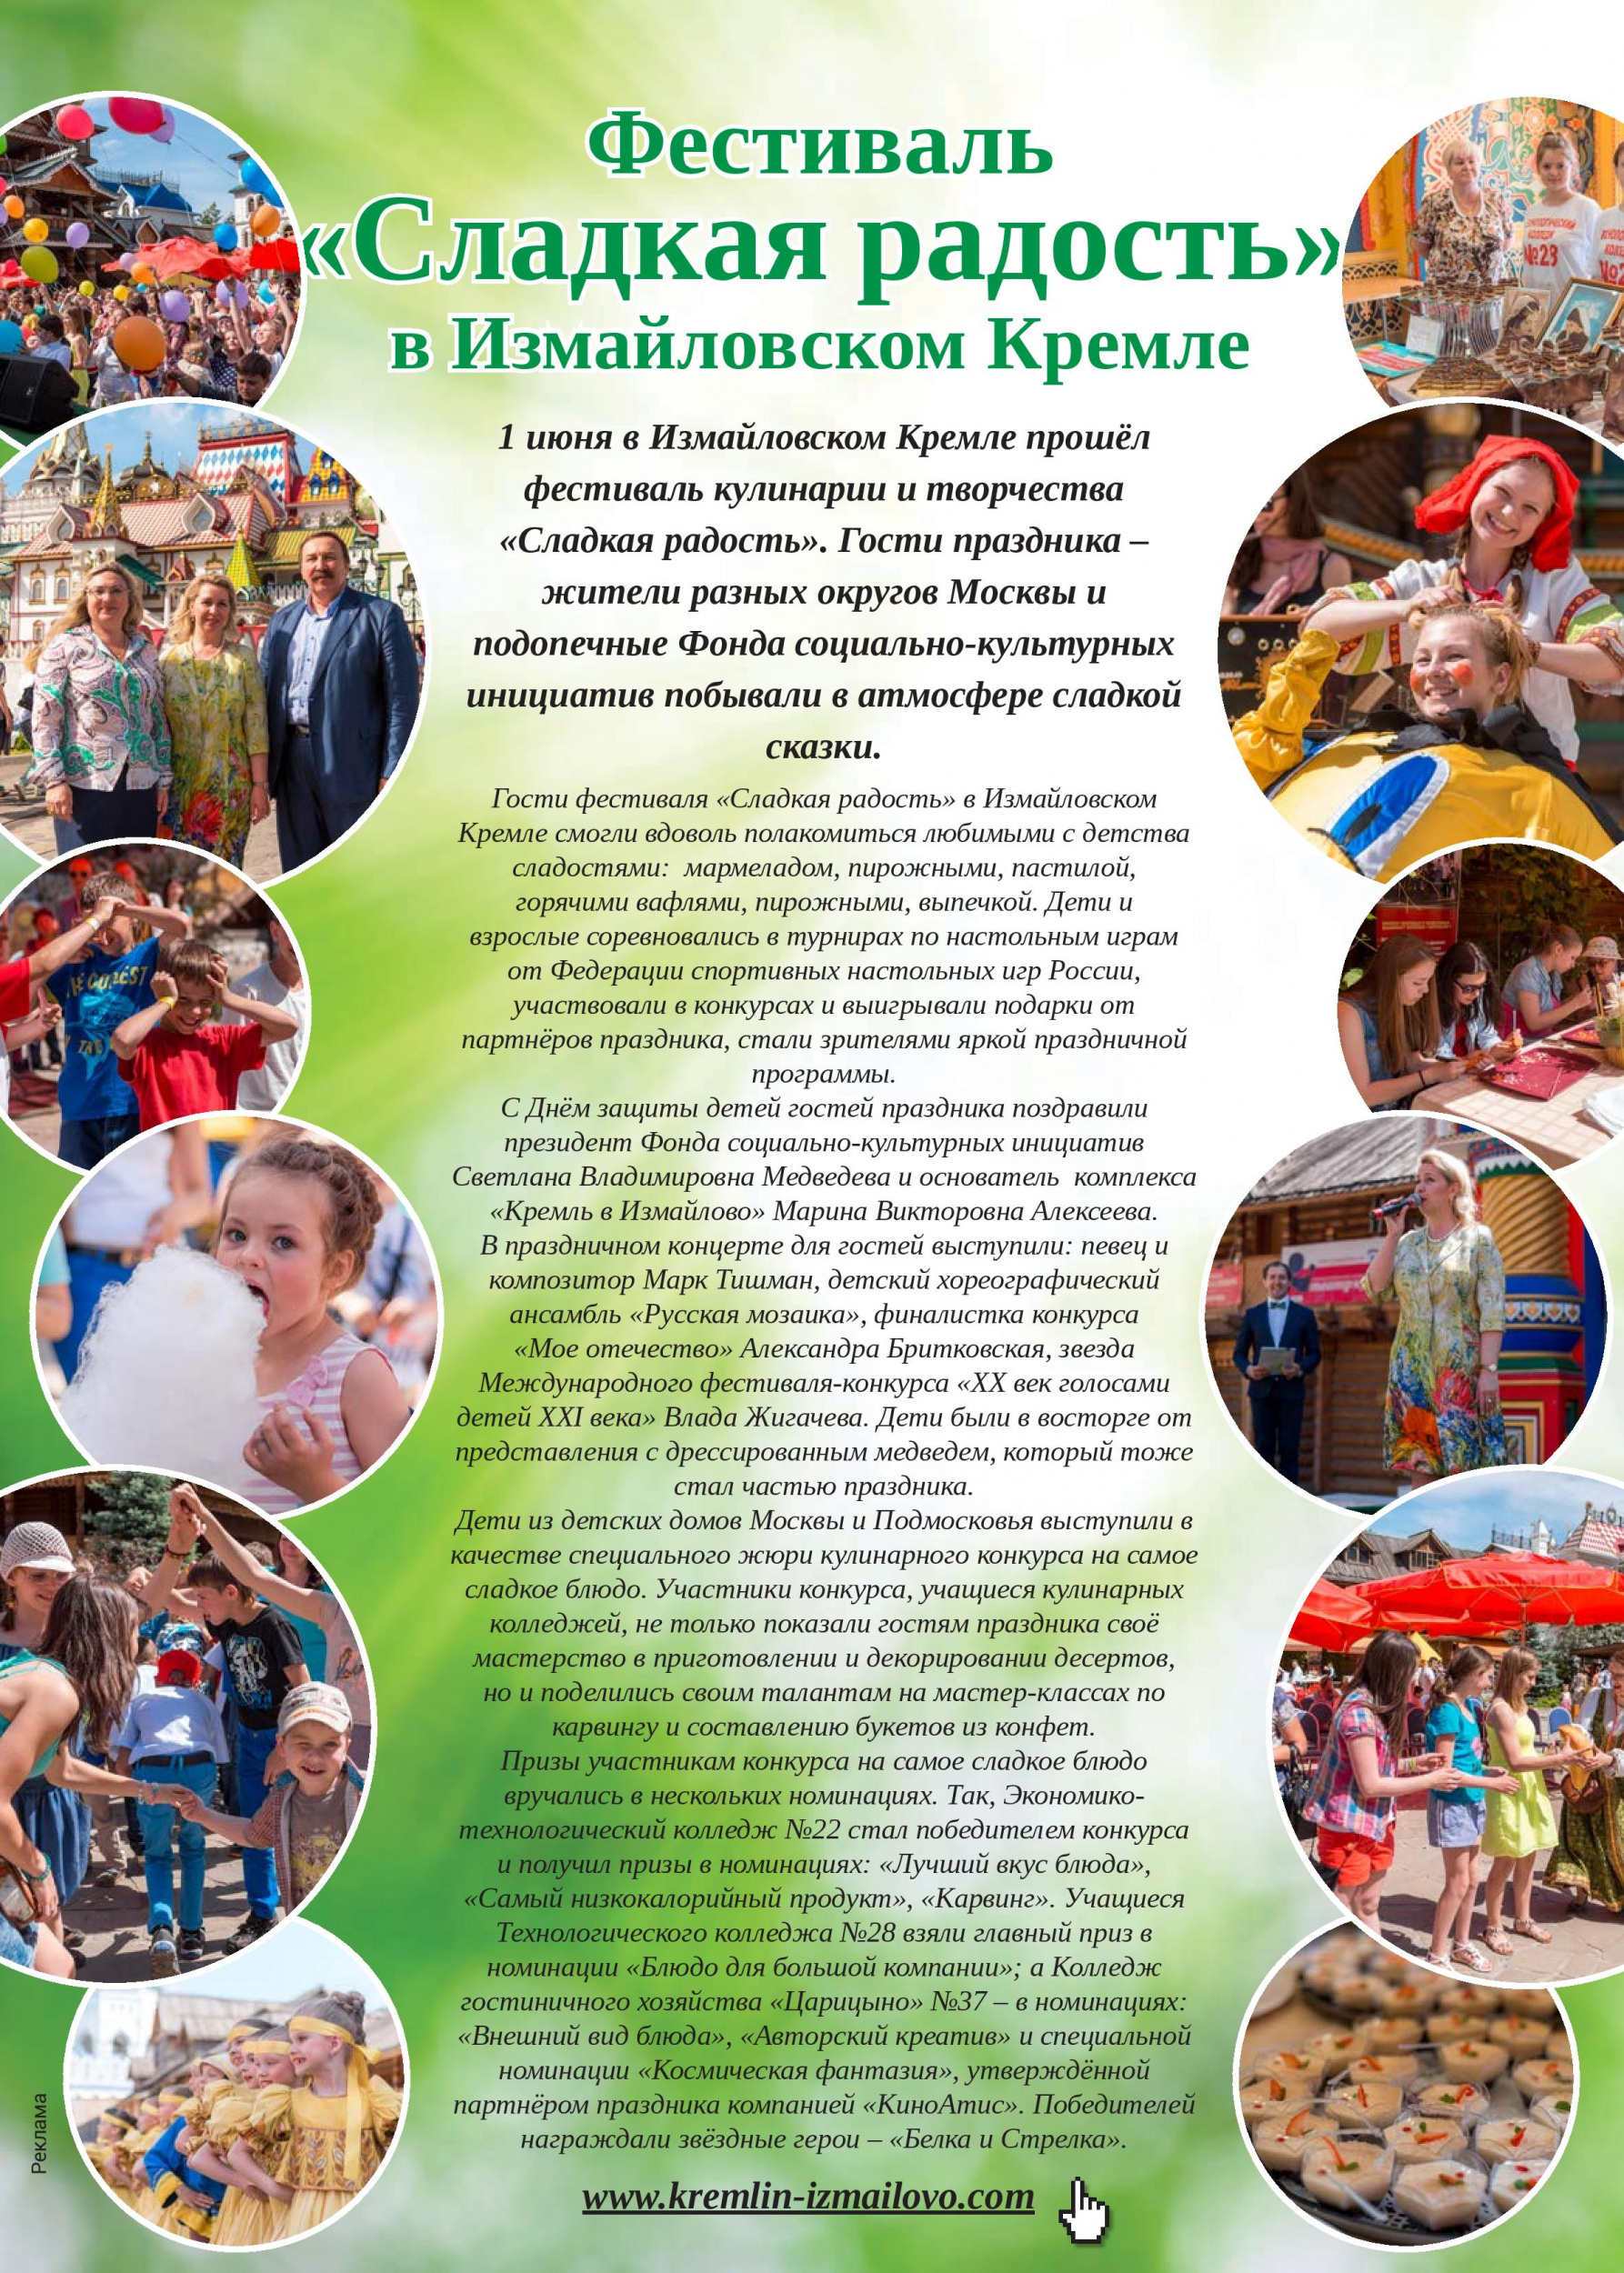 Фестиваль «Сладкая радость» в Измайловском Кремле